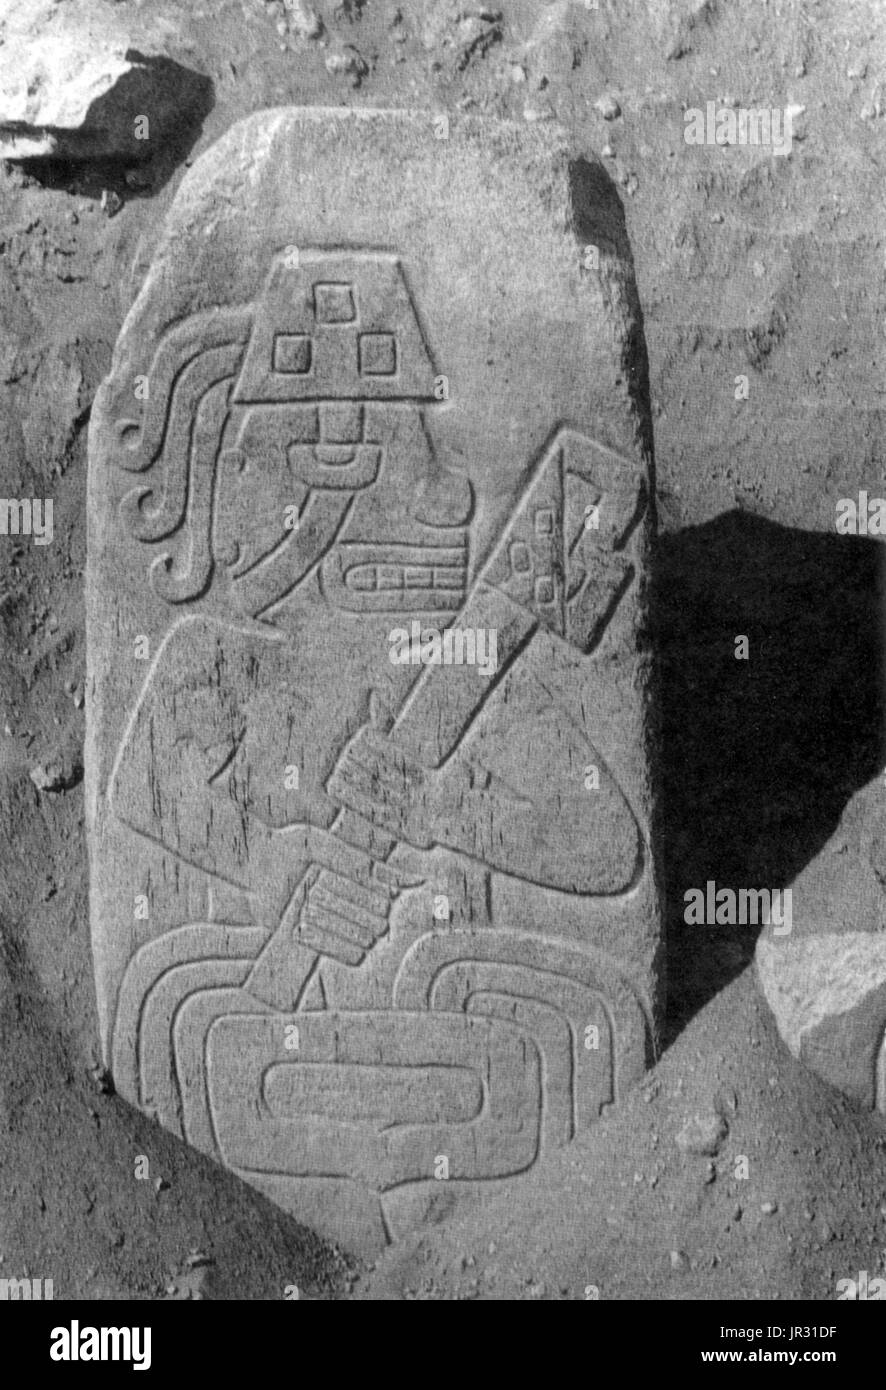 Le terme guerrier prêtres est généralement utilisé pour les prêtres de l'antiquité et du Moyen Age, et des tribus. Cerro Sechín est un site archéologique dans le nord du Pérou, datant de 1600 avant J.-C.. Il y a plusieurs bâtiments, réalisés à partir de l'argile et la pierre. La caractéristique la plus frappante du temple est son bloc lithique façade décorée de reliefs représentant les prêtres-guerriers (port d'une arme ou d'un sceptre) et mutilés(chefs, les membres, les yeux de brochettes, les intestins, les vertèbres et les viscères). Les bas-reliefs gravés nombre d'environ 300. Il y a eu diverses interprétations des sculptures sur pierre. L'un Banque D'Images